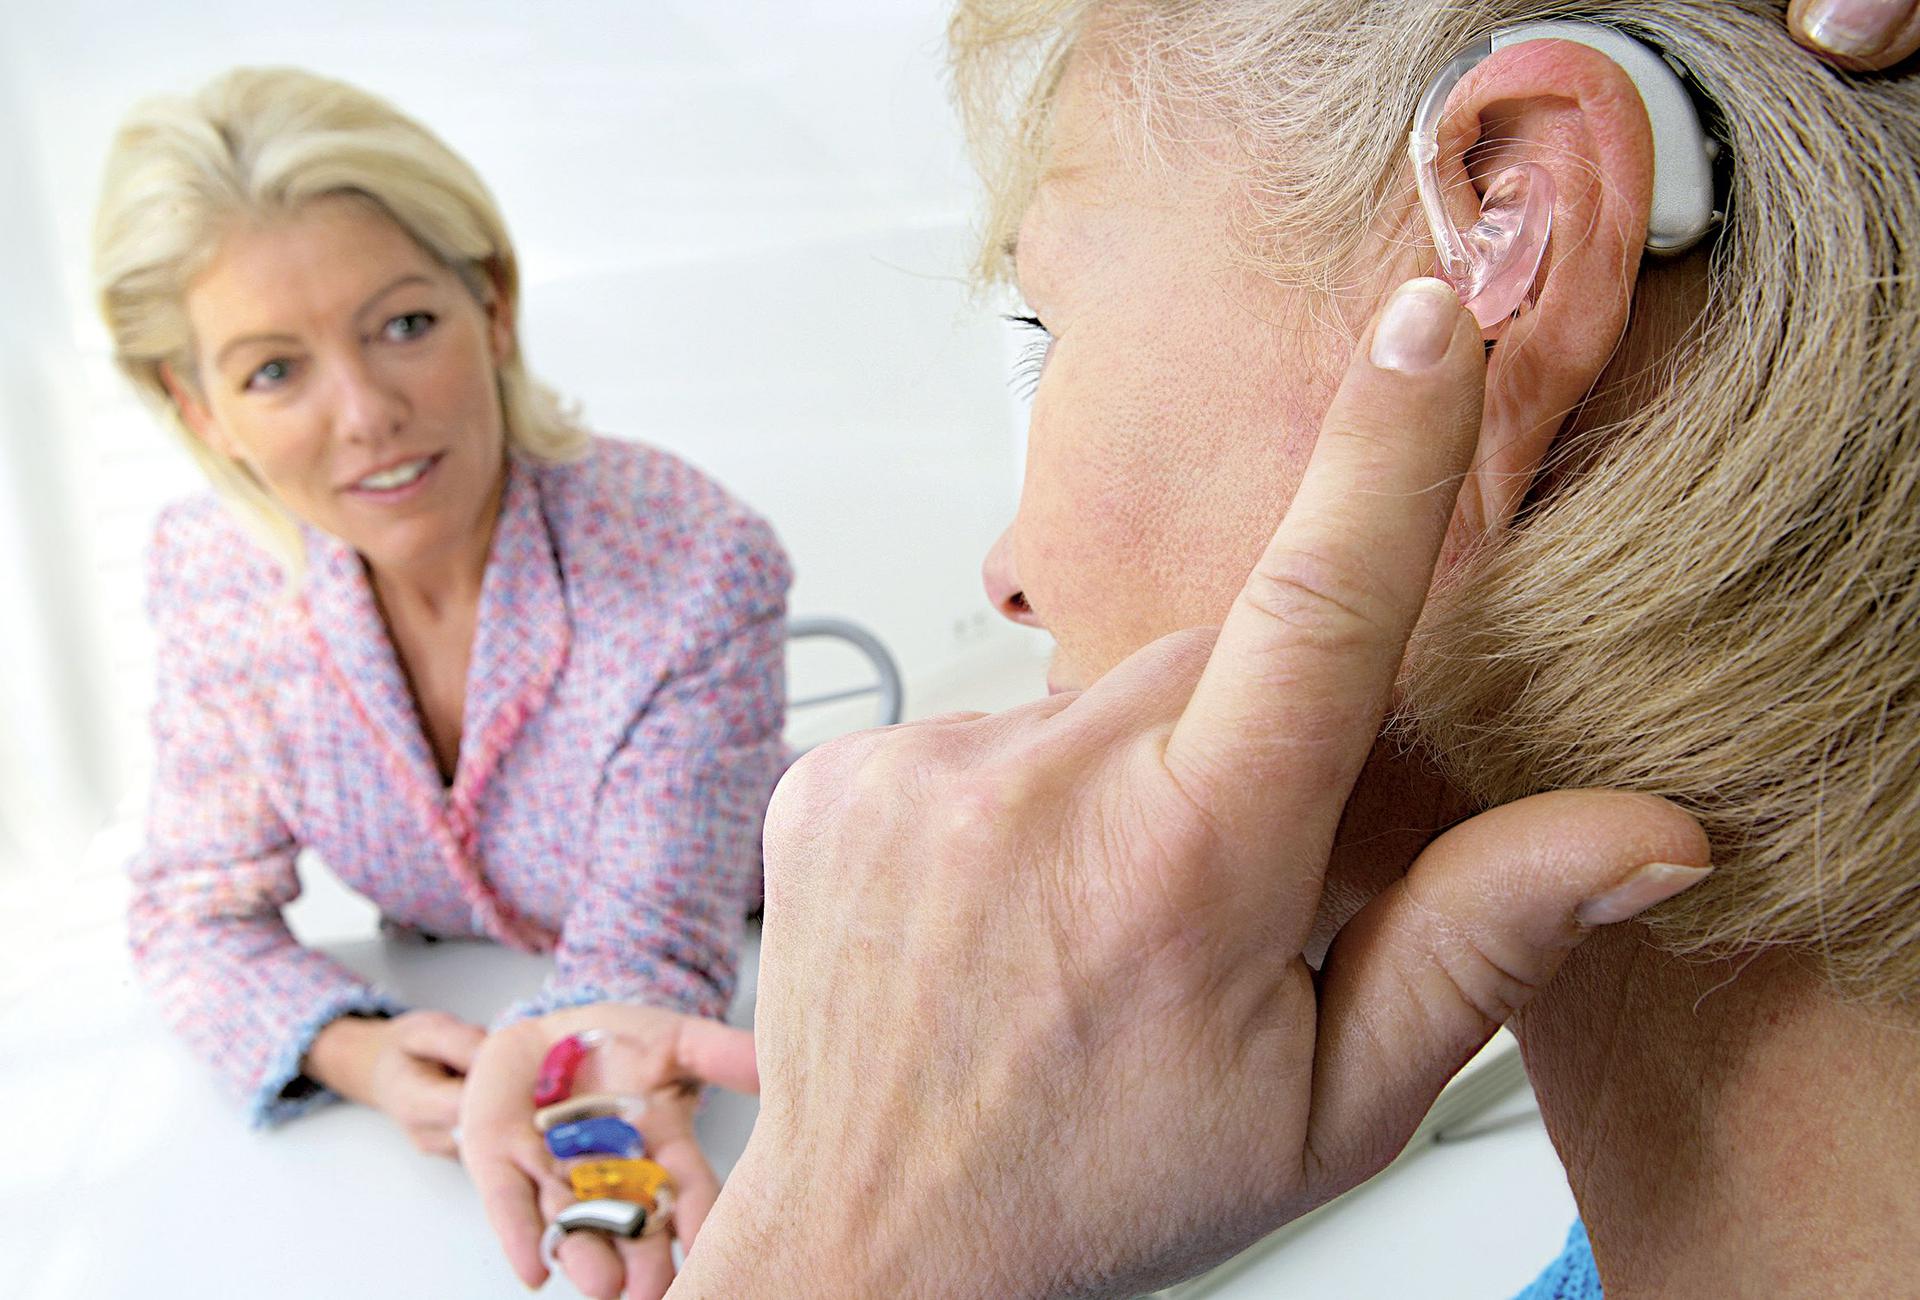 Какие расстройства слуха вам известны